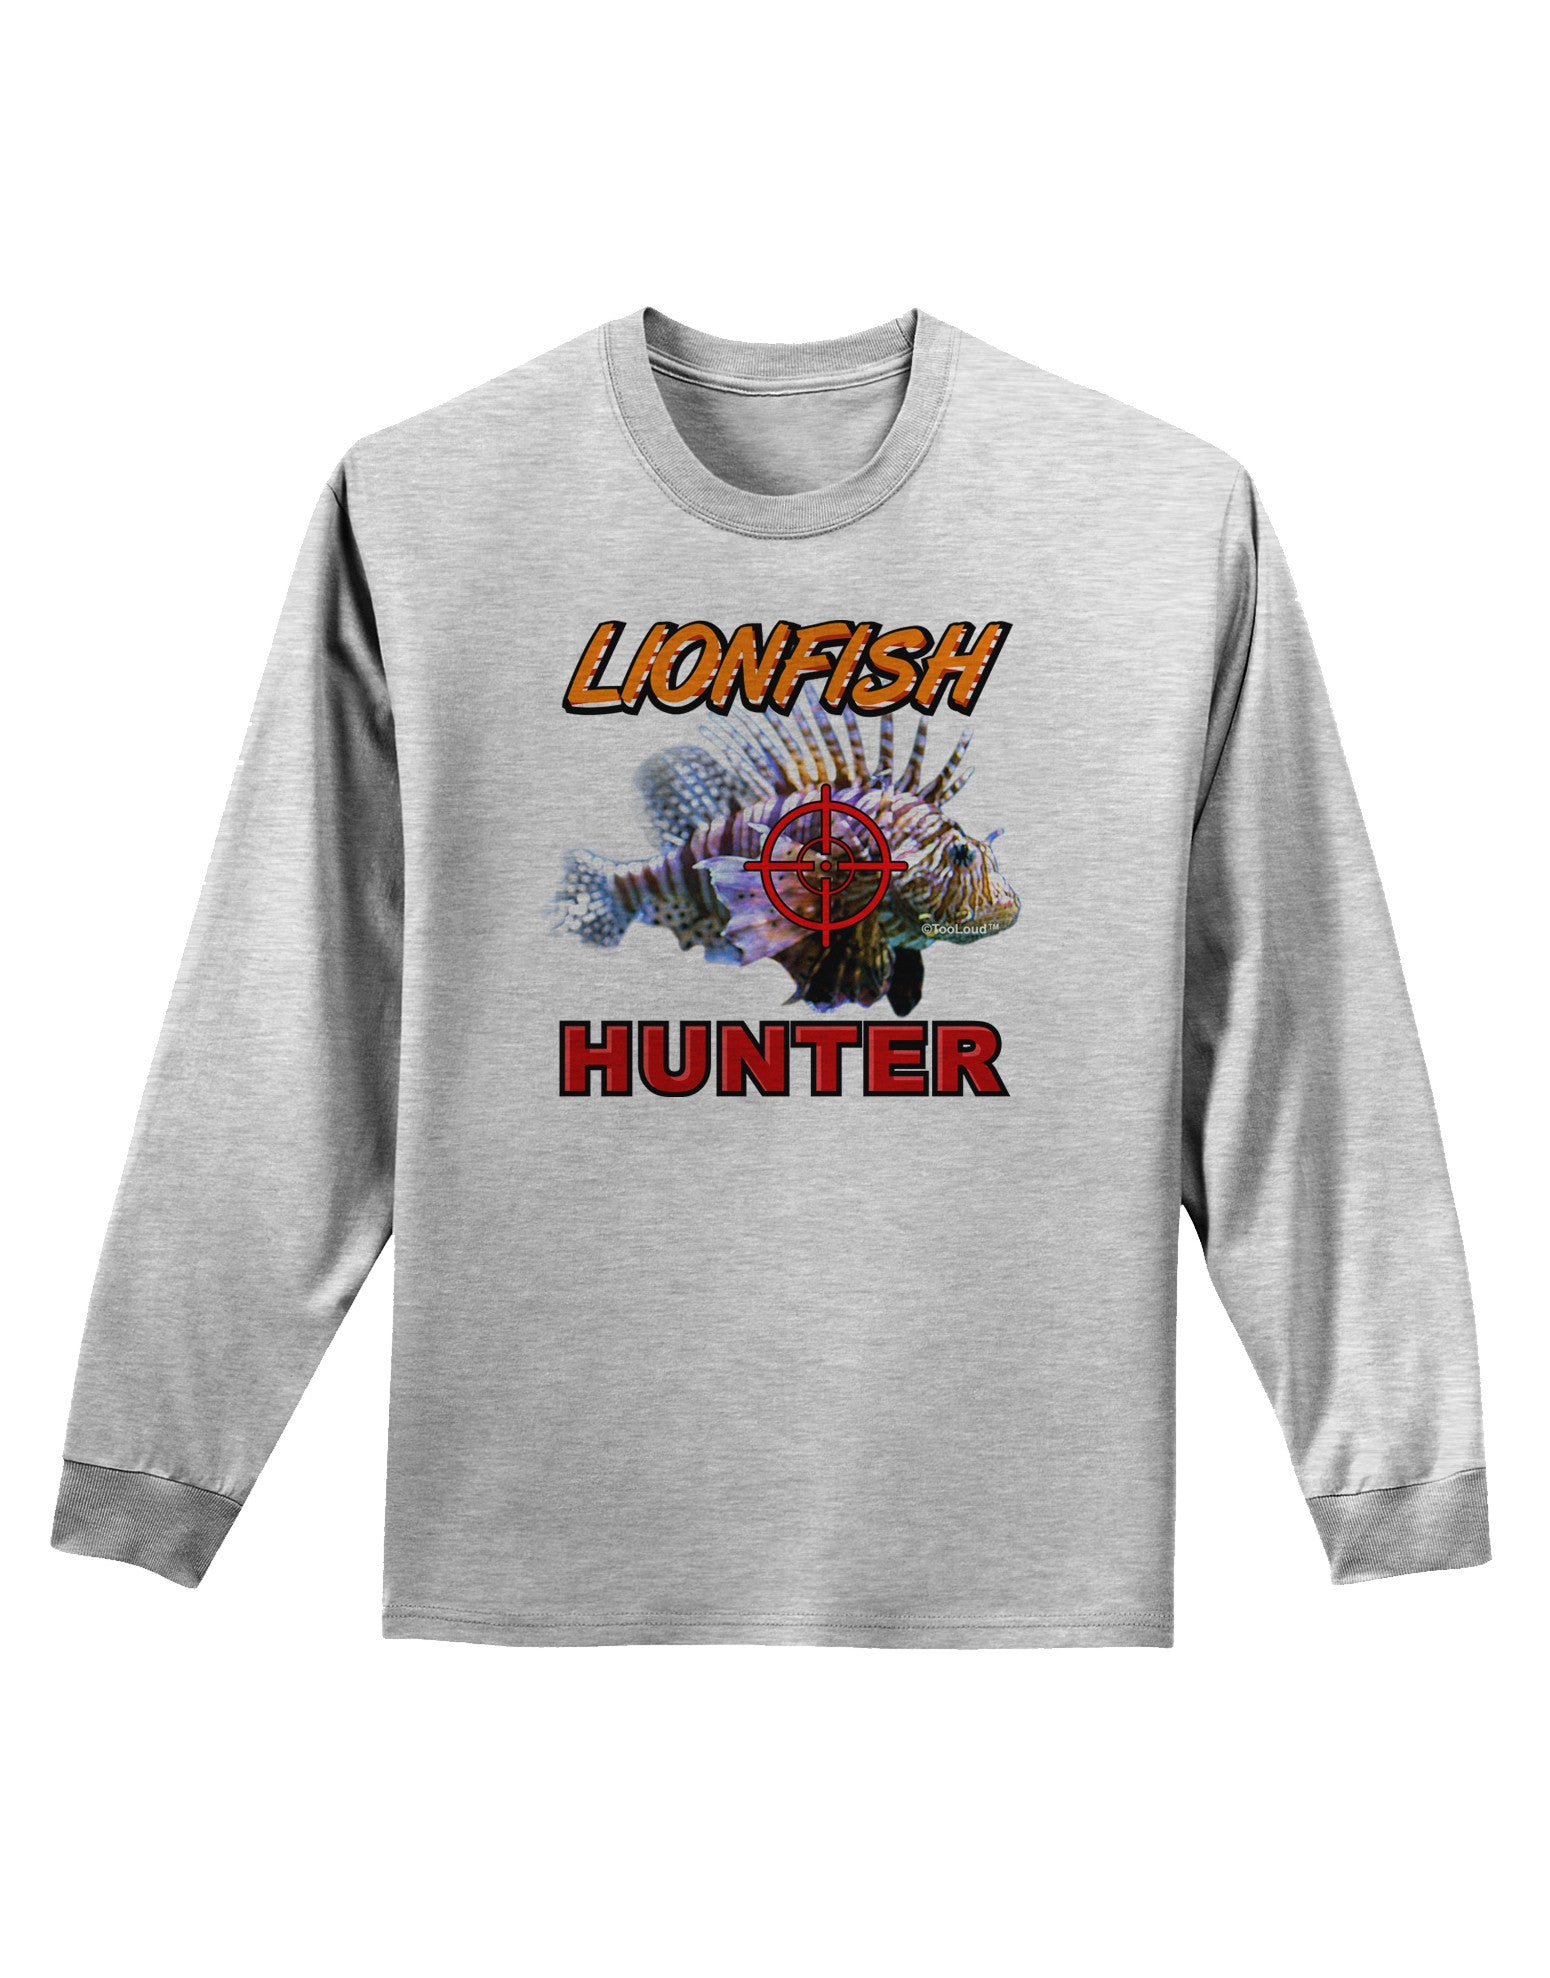 Lionfish Hunter Adult Long Sleeve Shirt White / XXXX-Large